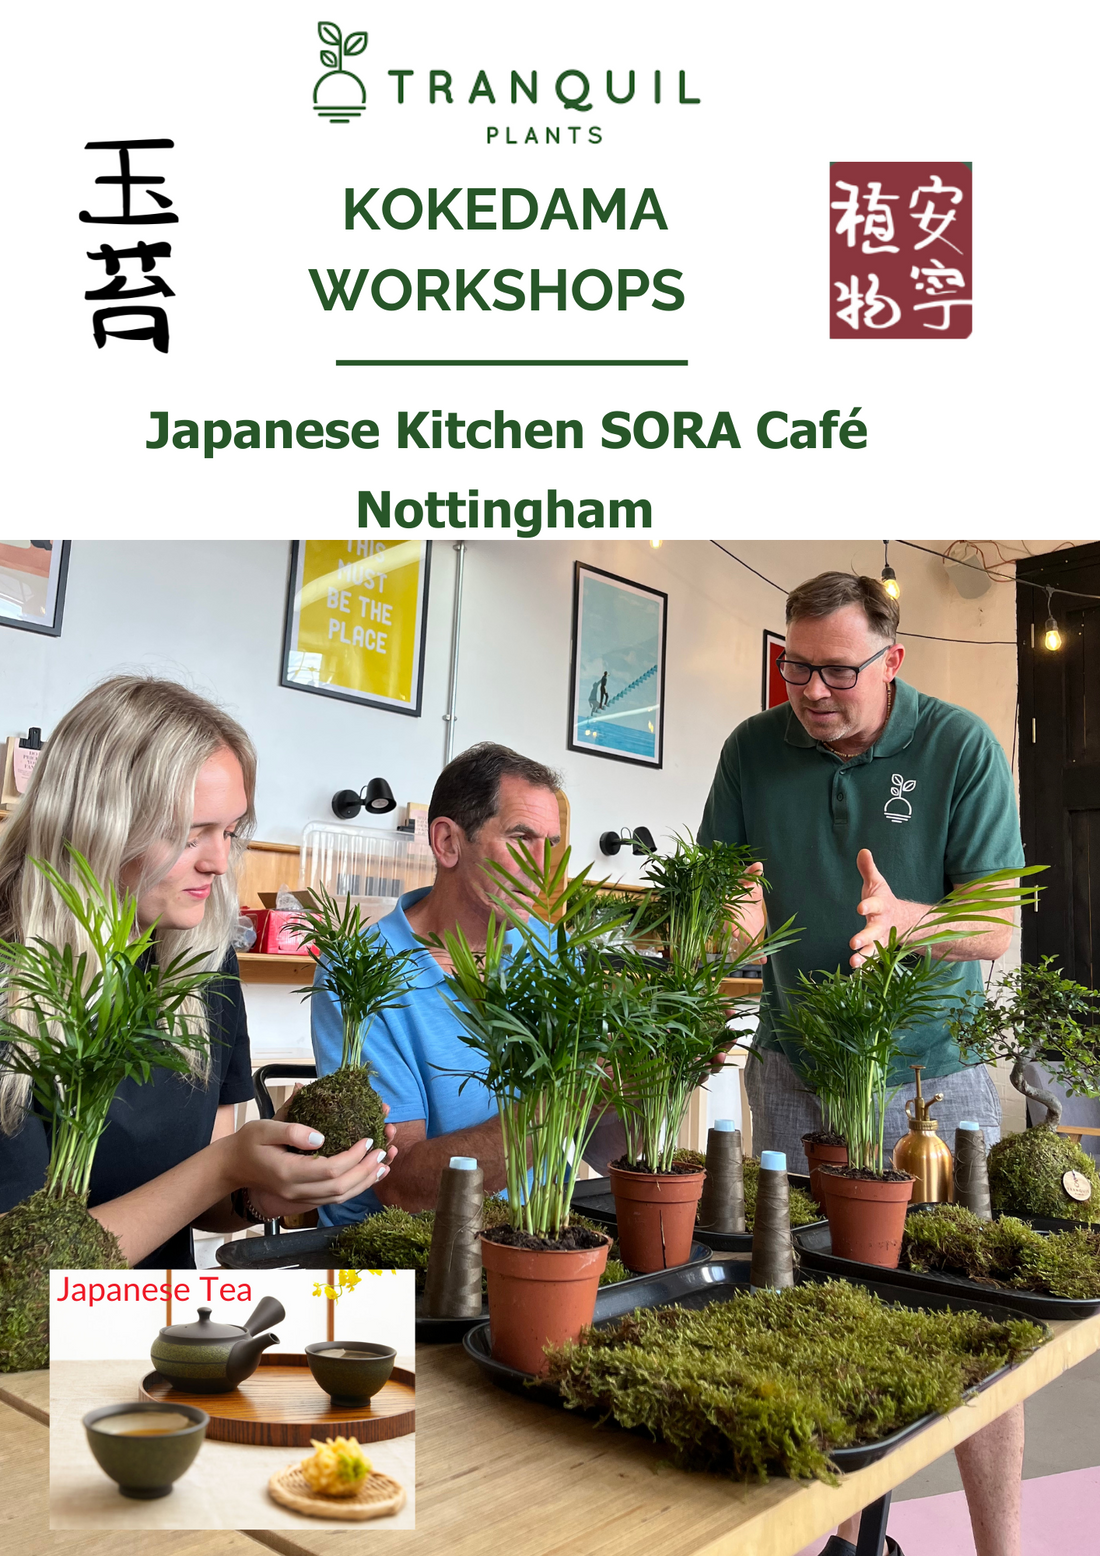 Kokedama Plant Workshops: Japanese Kitchen SORA cafe &amp; Izakaya Tapas Tranquil Plants